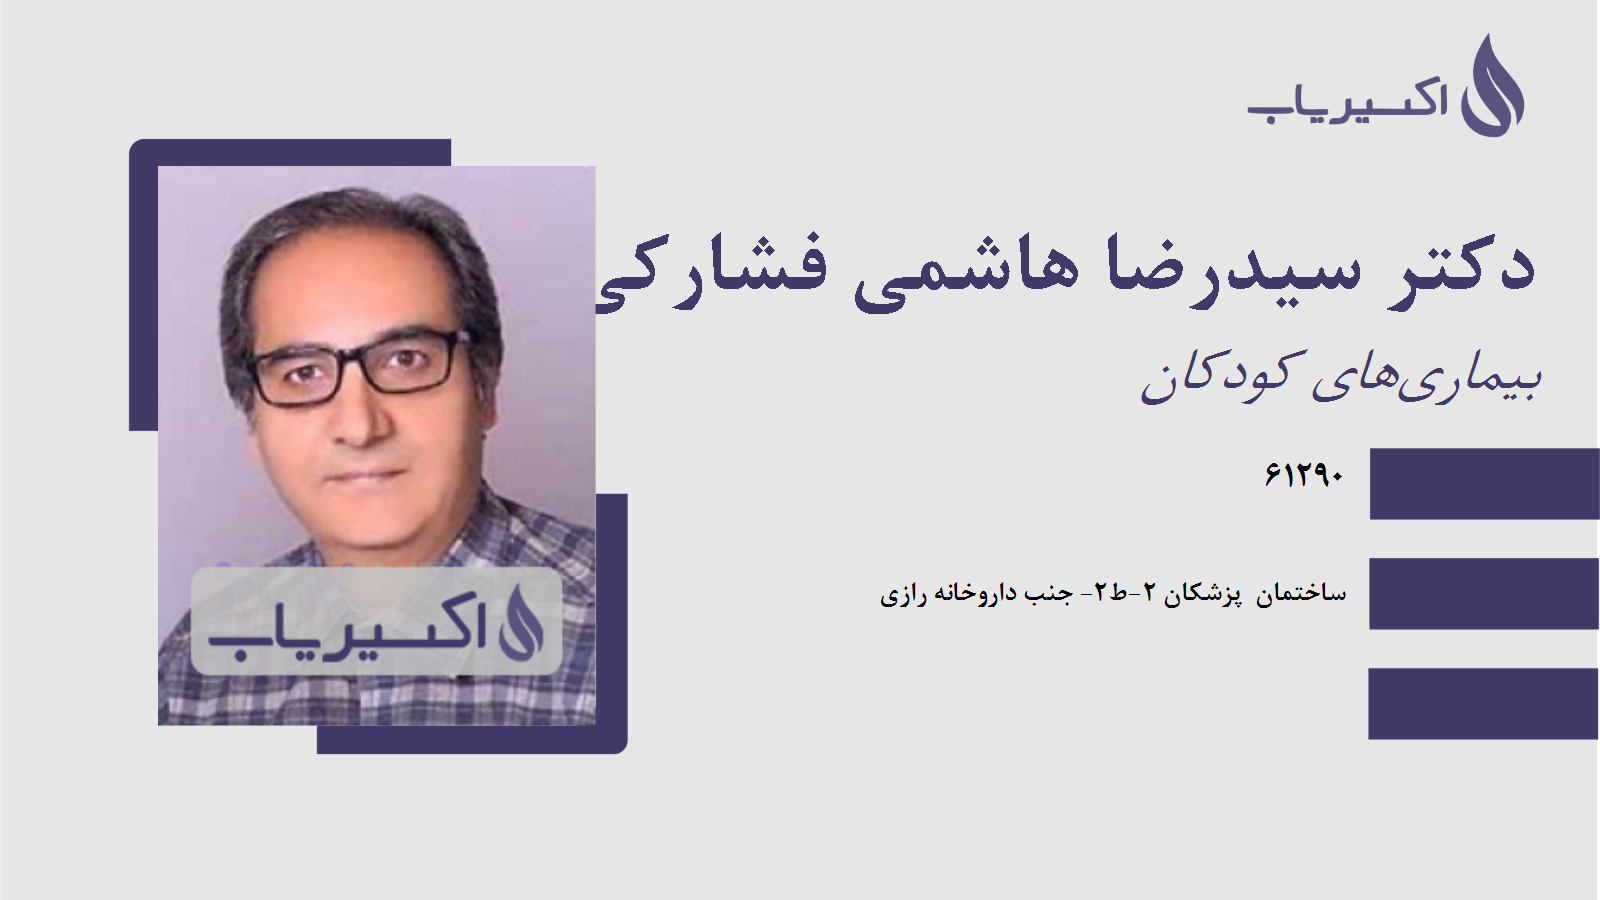 مطب دکتر سیدرضا هاشمی فشارکی